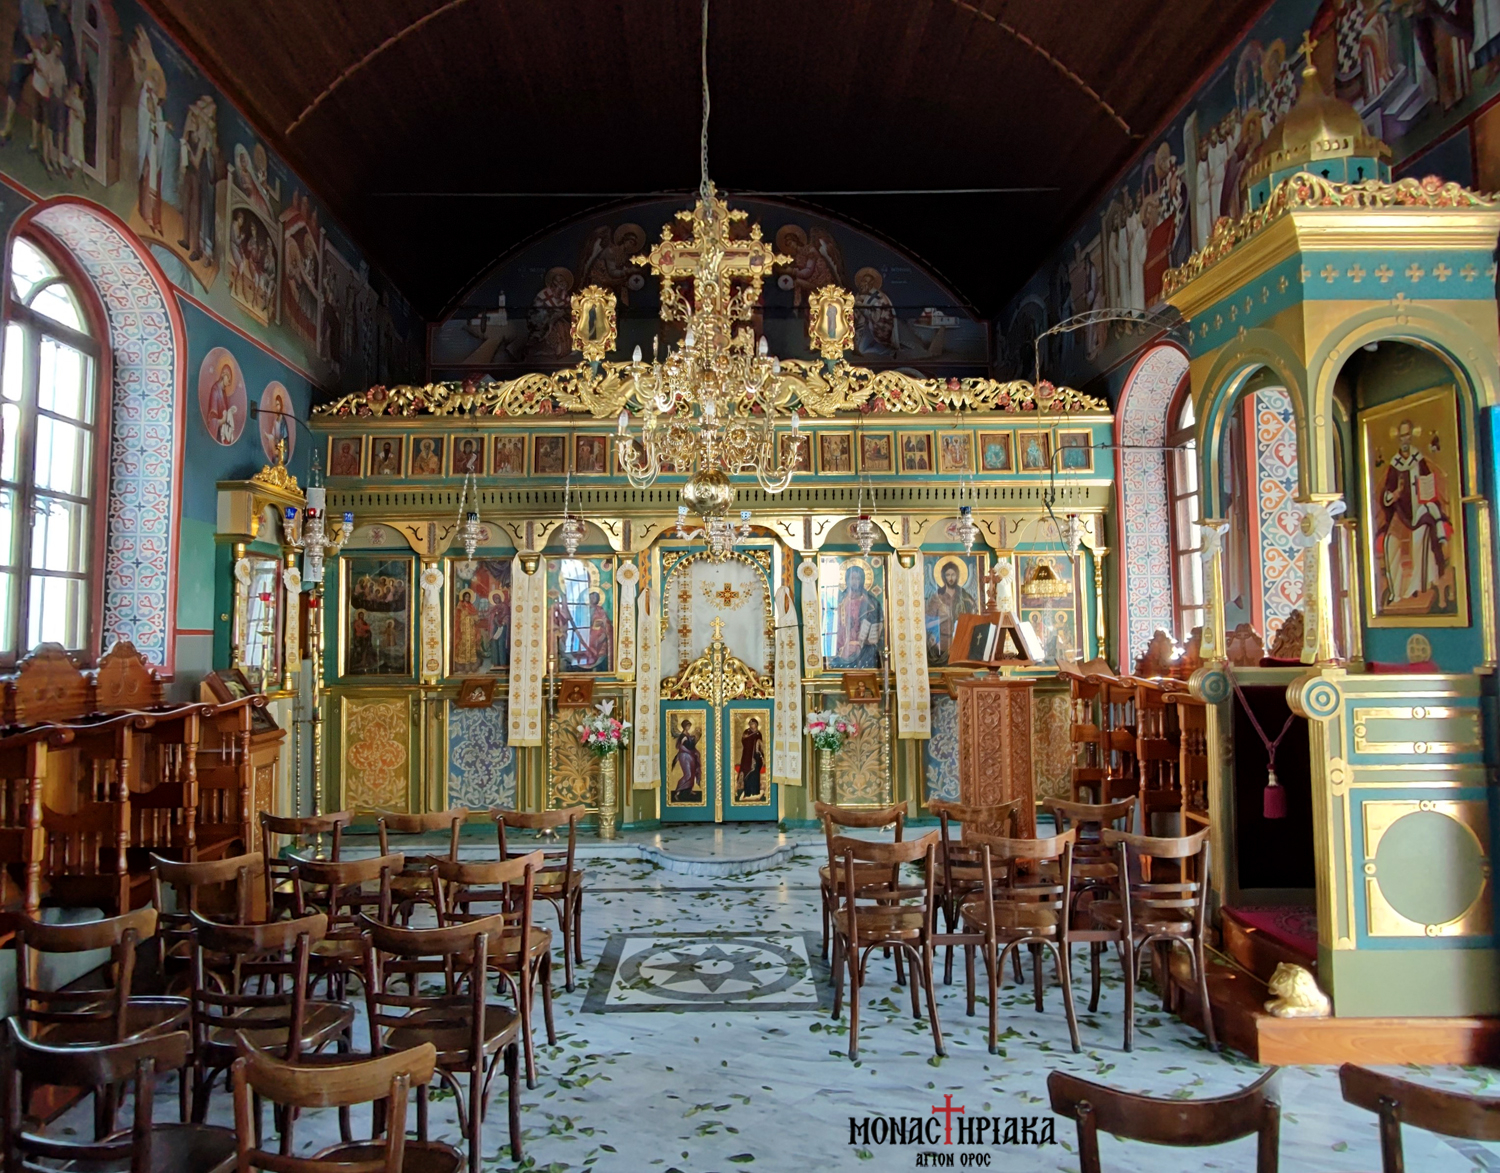 Monastery of Saint Nicholas